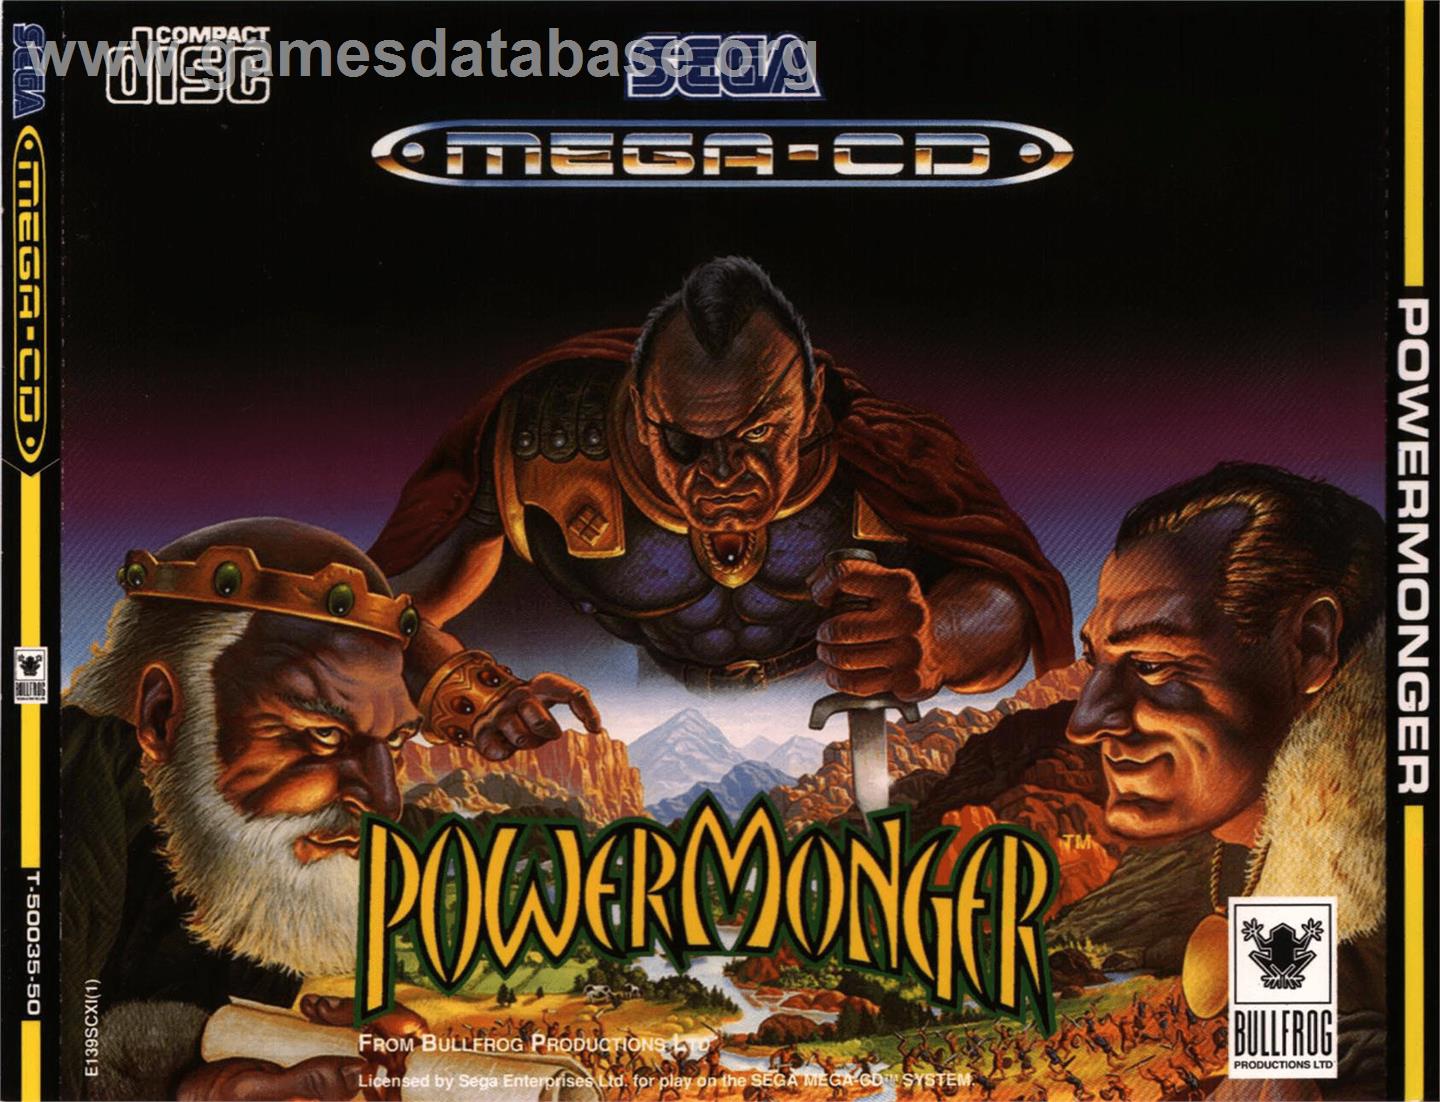 Powermonger - Sega CD - Artwork - Box